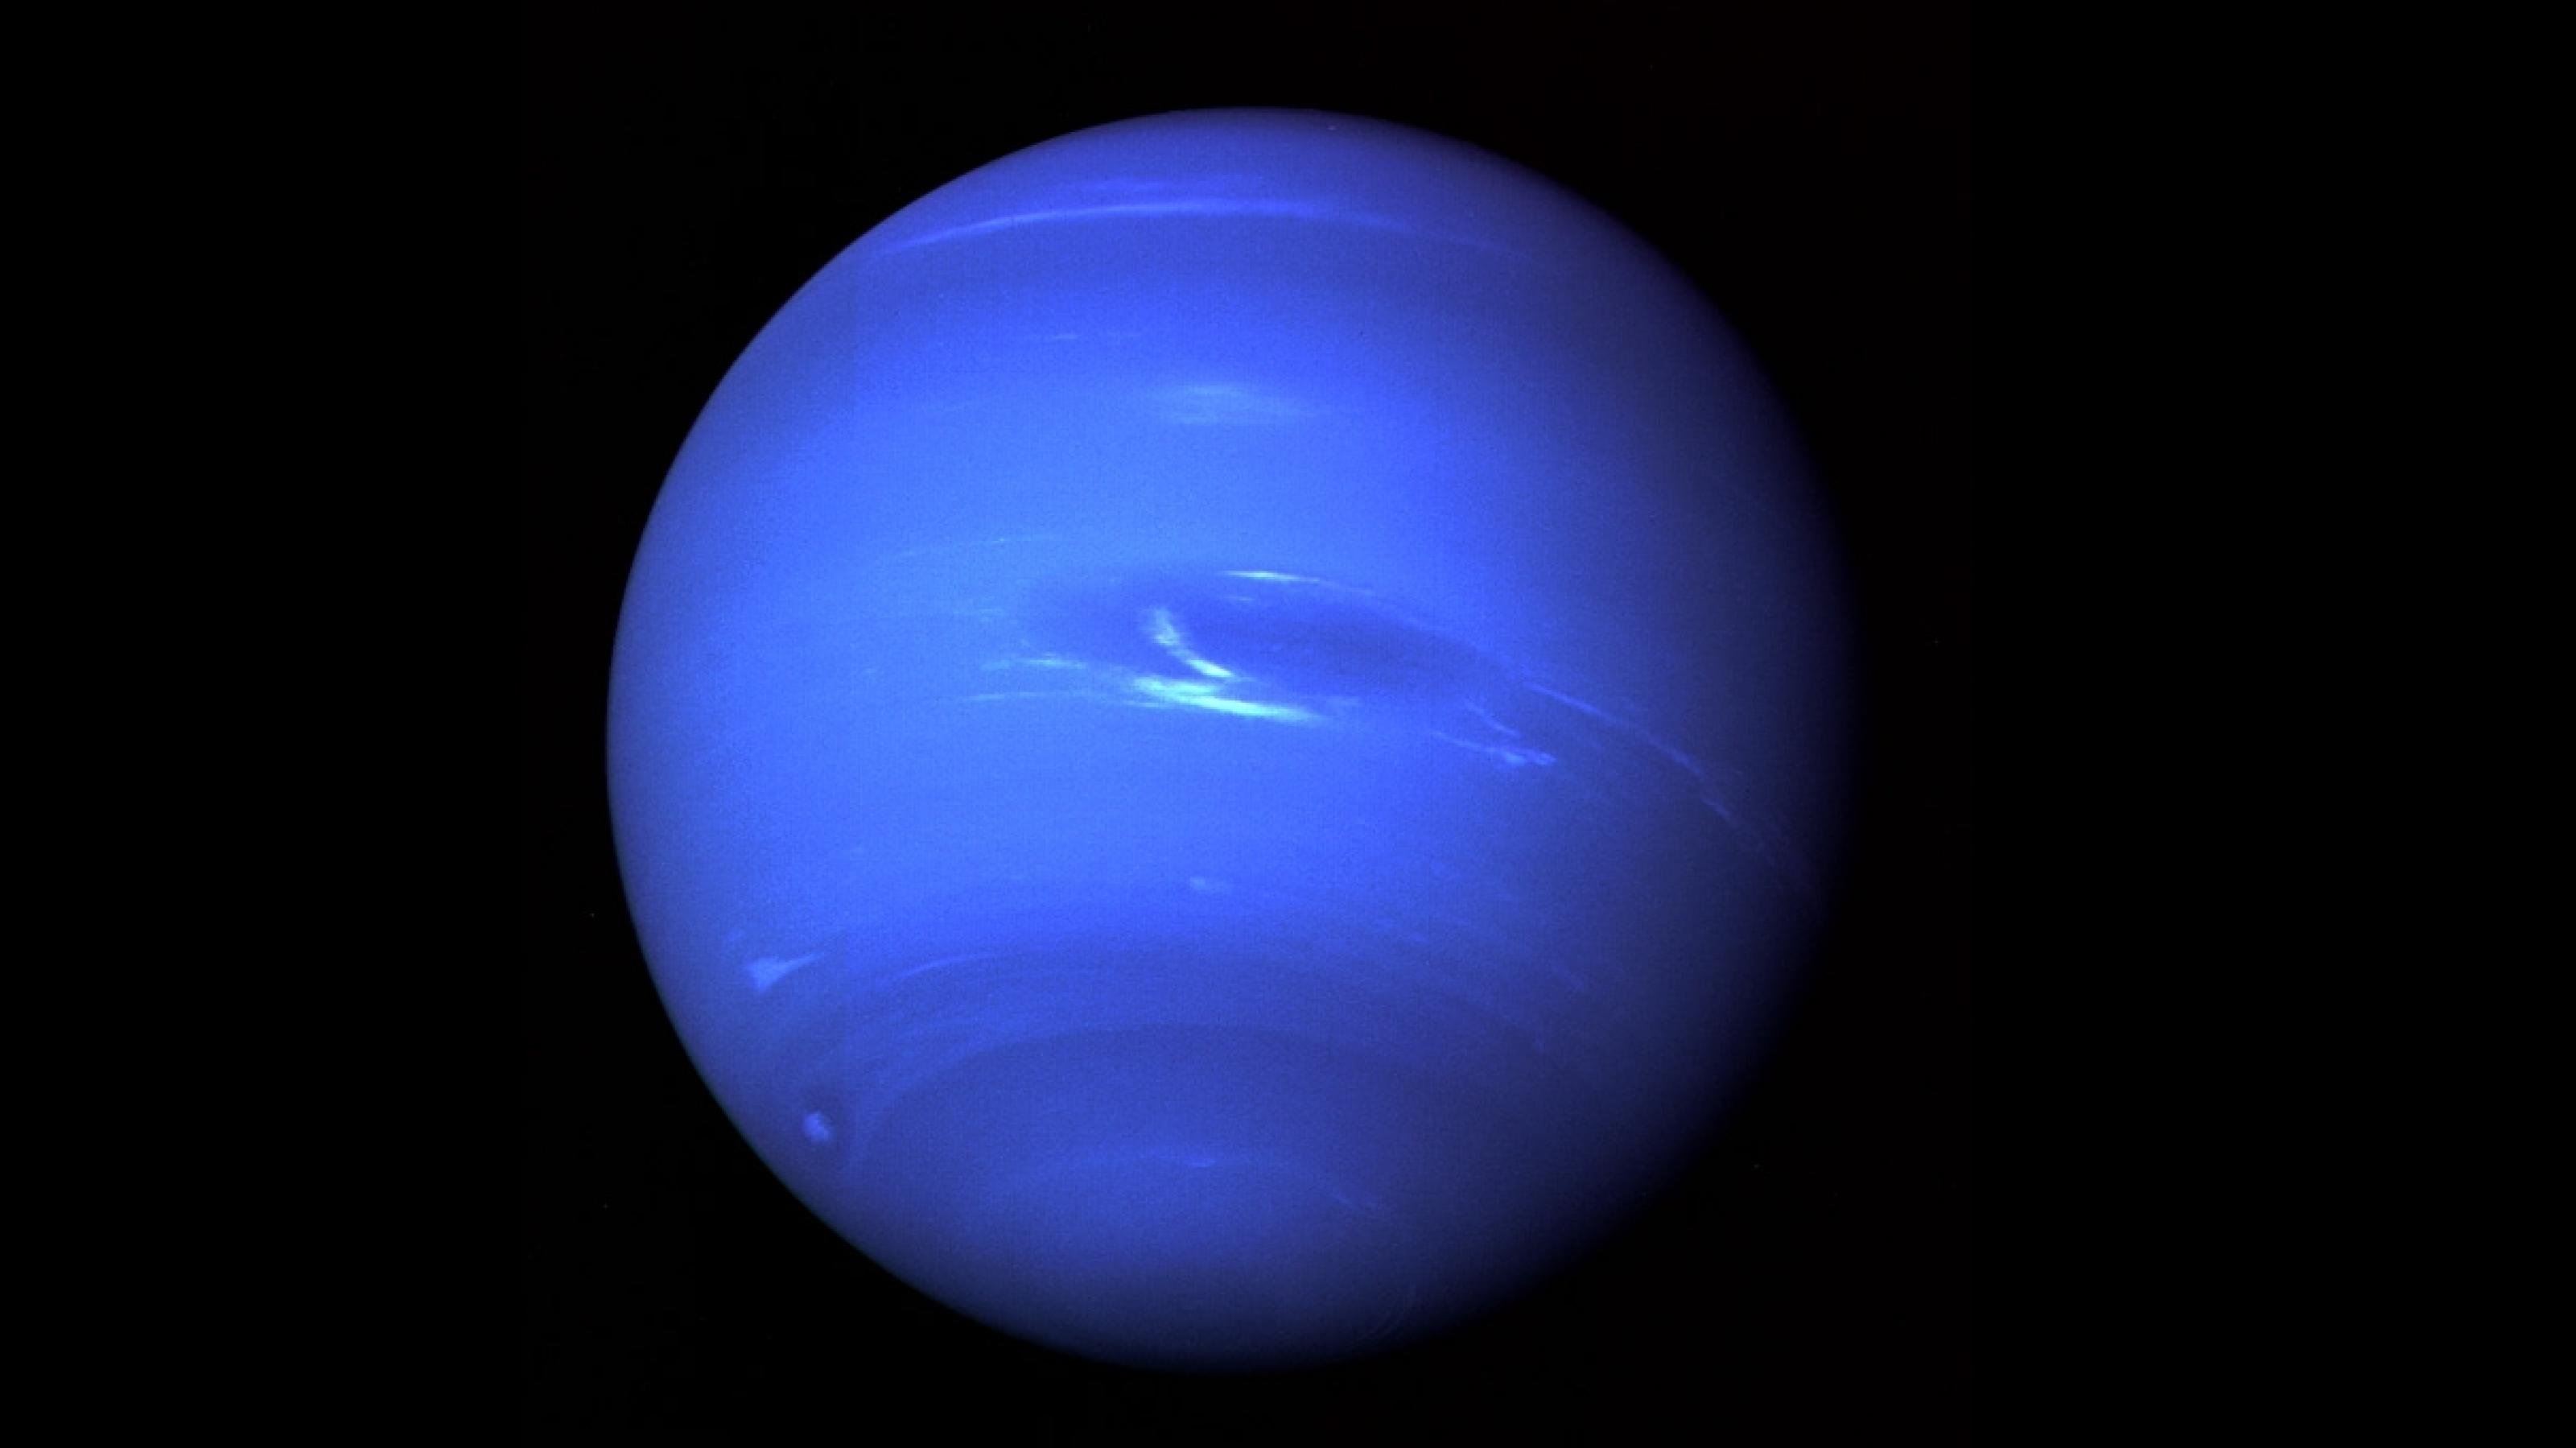 Neptun, am 22. August 1989 von Voyager 2 aufgenommen, zeigt wenig Detailreichtum – ähnlich wie der zuvor besuchte Uranus.